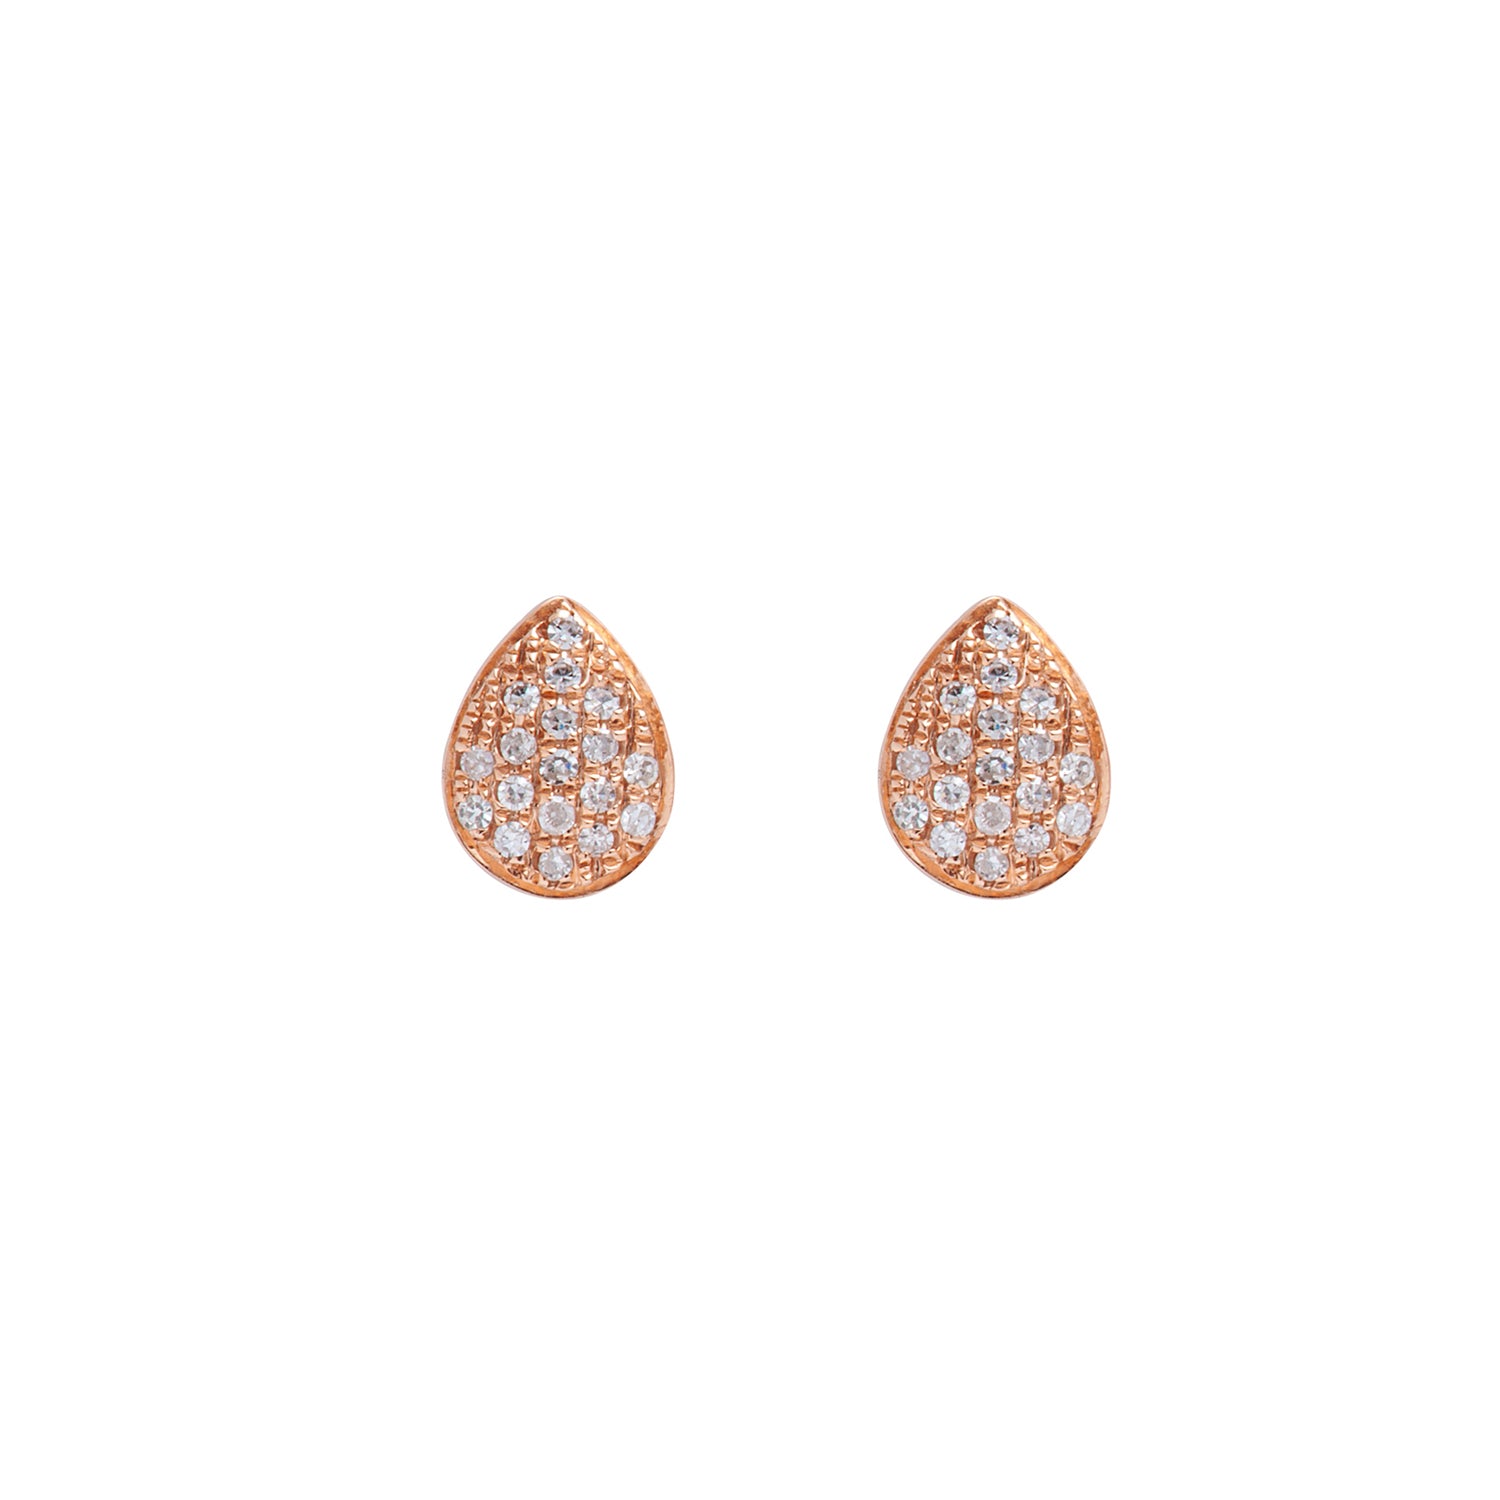 Diamond drop earrings. Diamond drops studs.